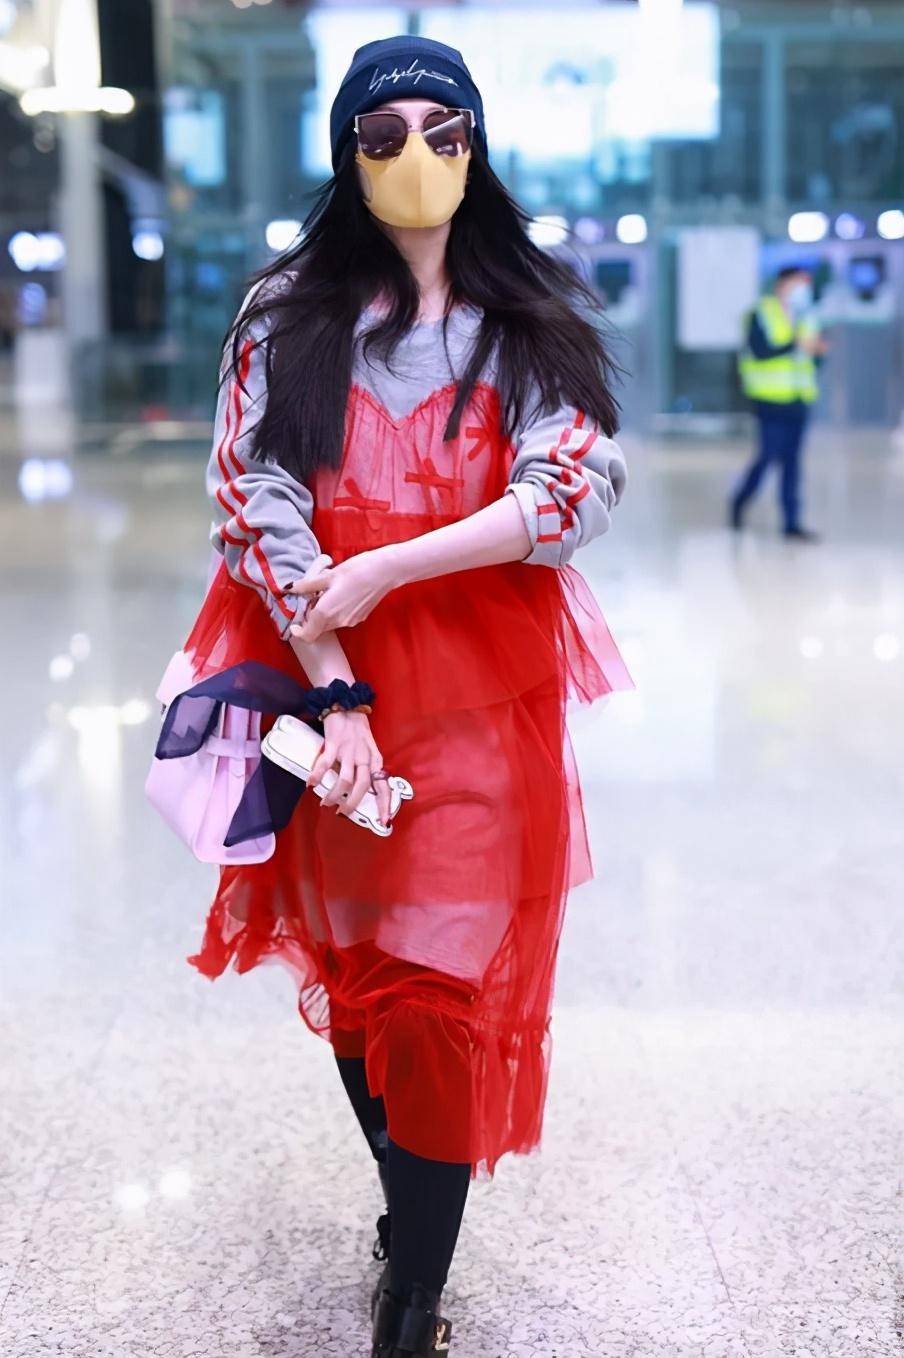 原创39岁范冰冰造型太猎奇,休闲卫衣配艳红纱裙!网友:不懂她的时尚